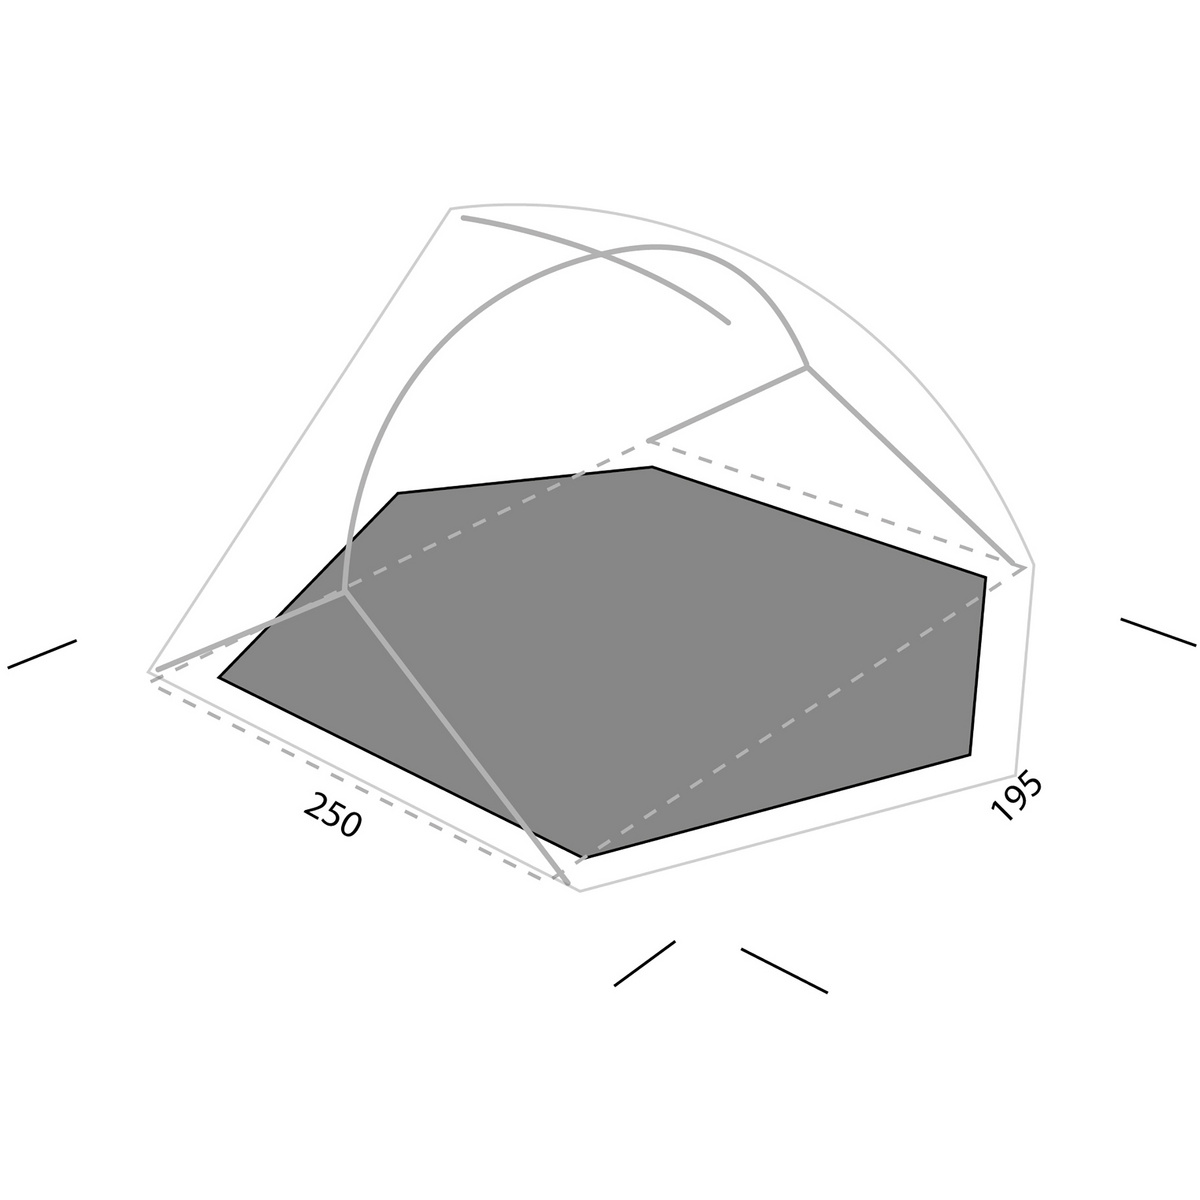 Image of Exped Telo pavimento tenda